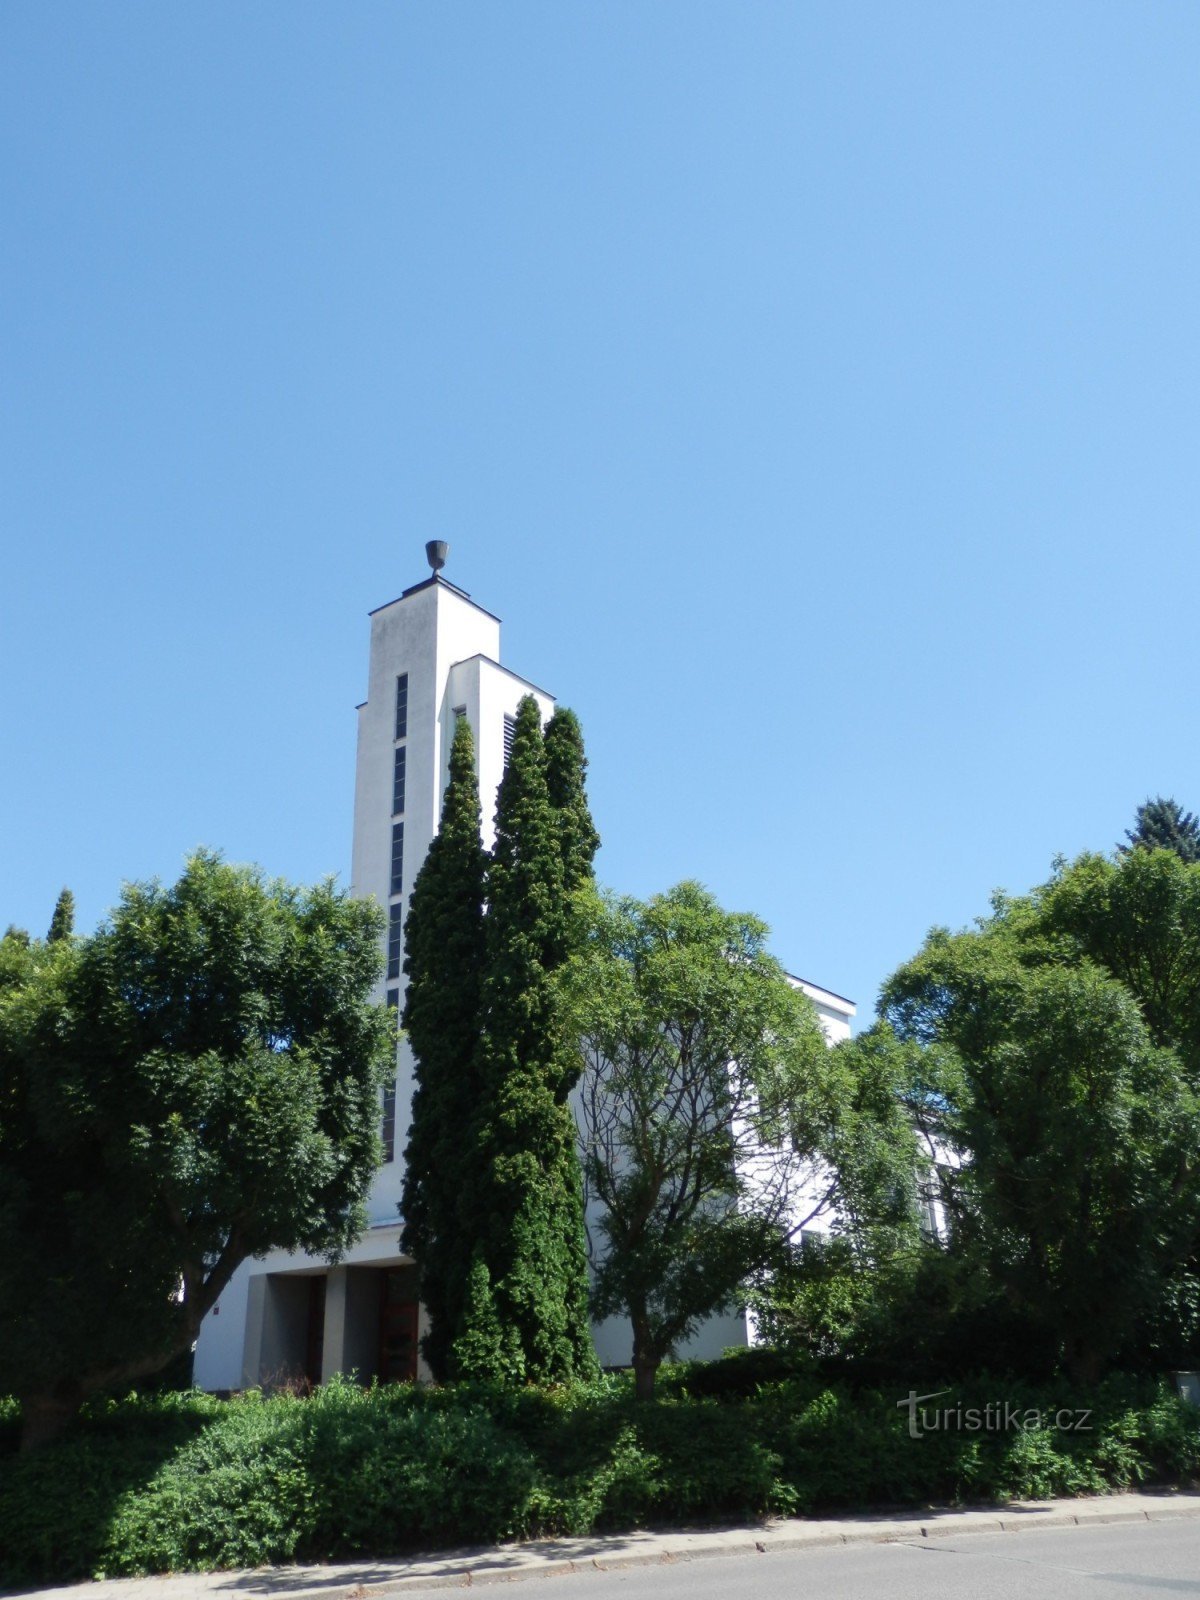 ボスコヴィツェ - 福音派教会